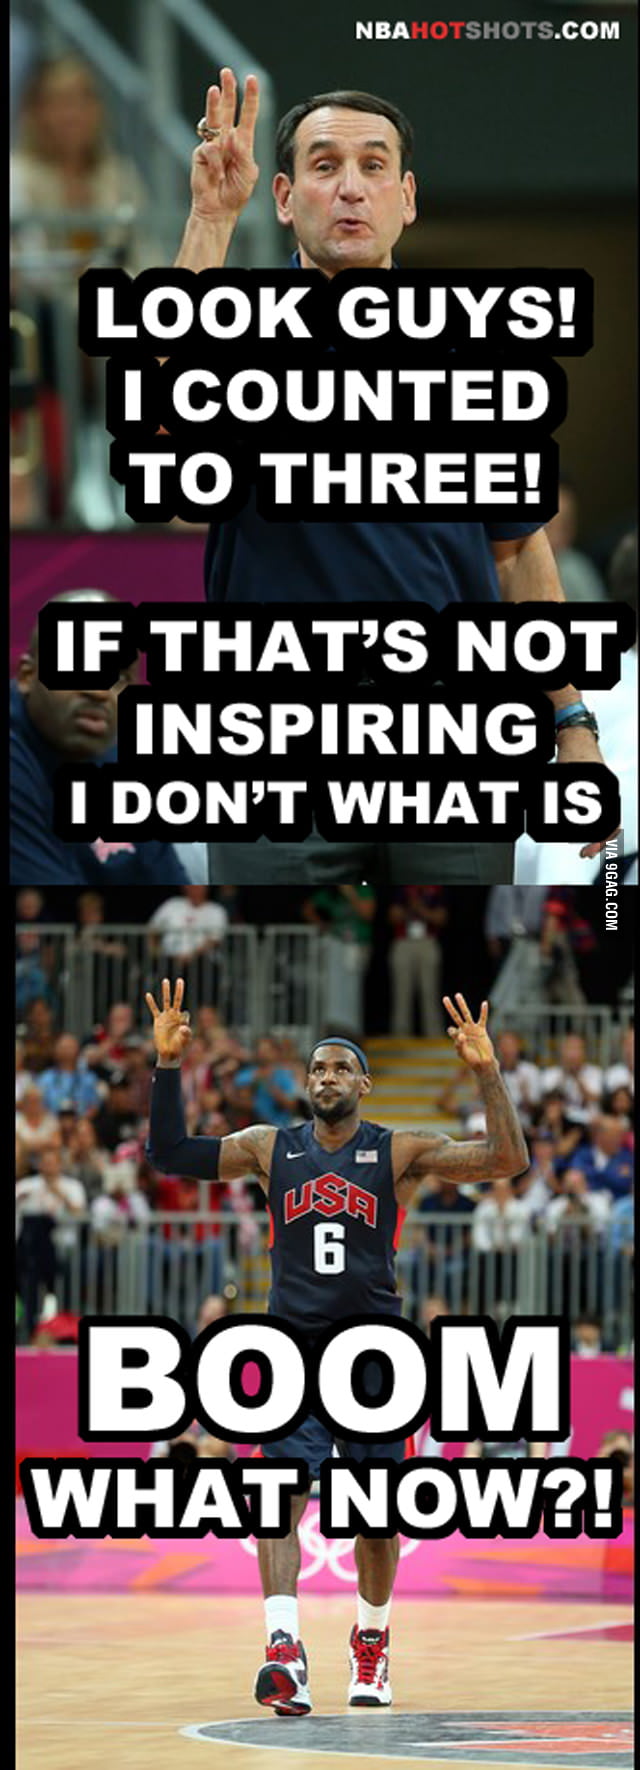 Memes] NBA Memes Team USA Basketball Funny Humor Pics - 9GAG